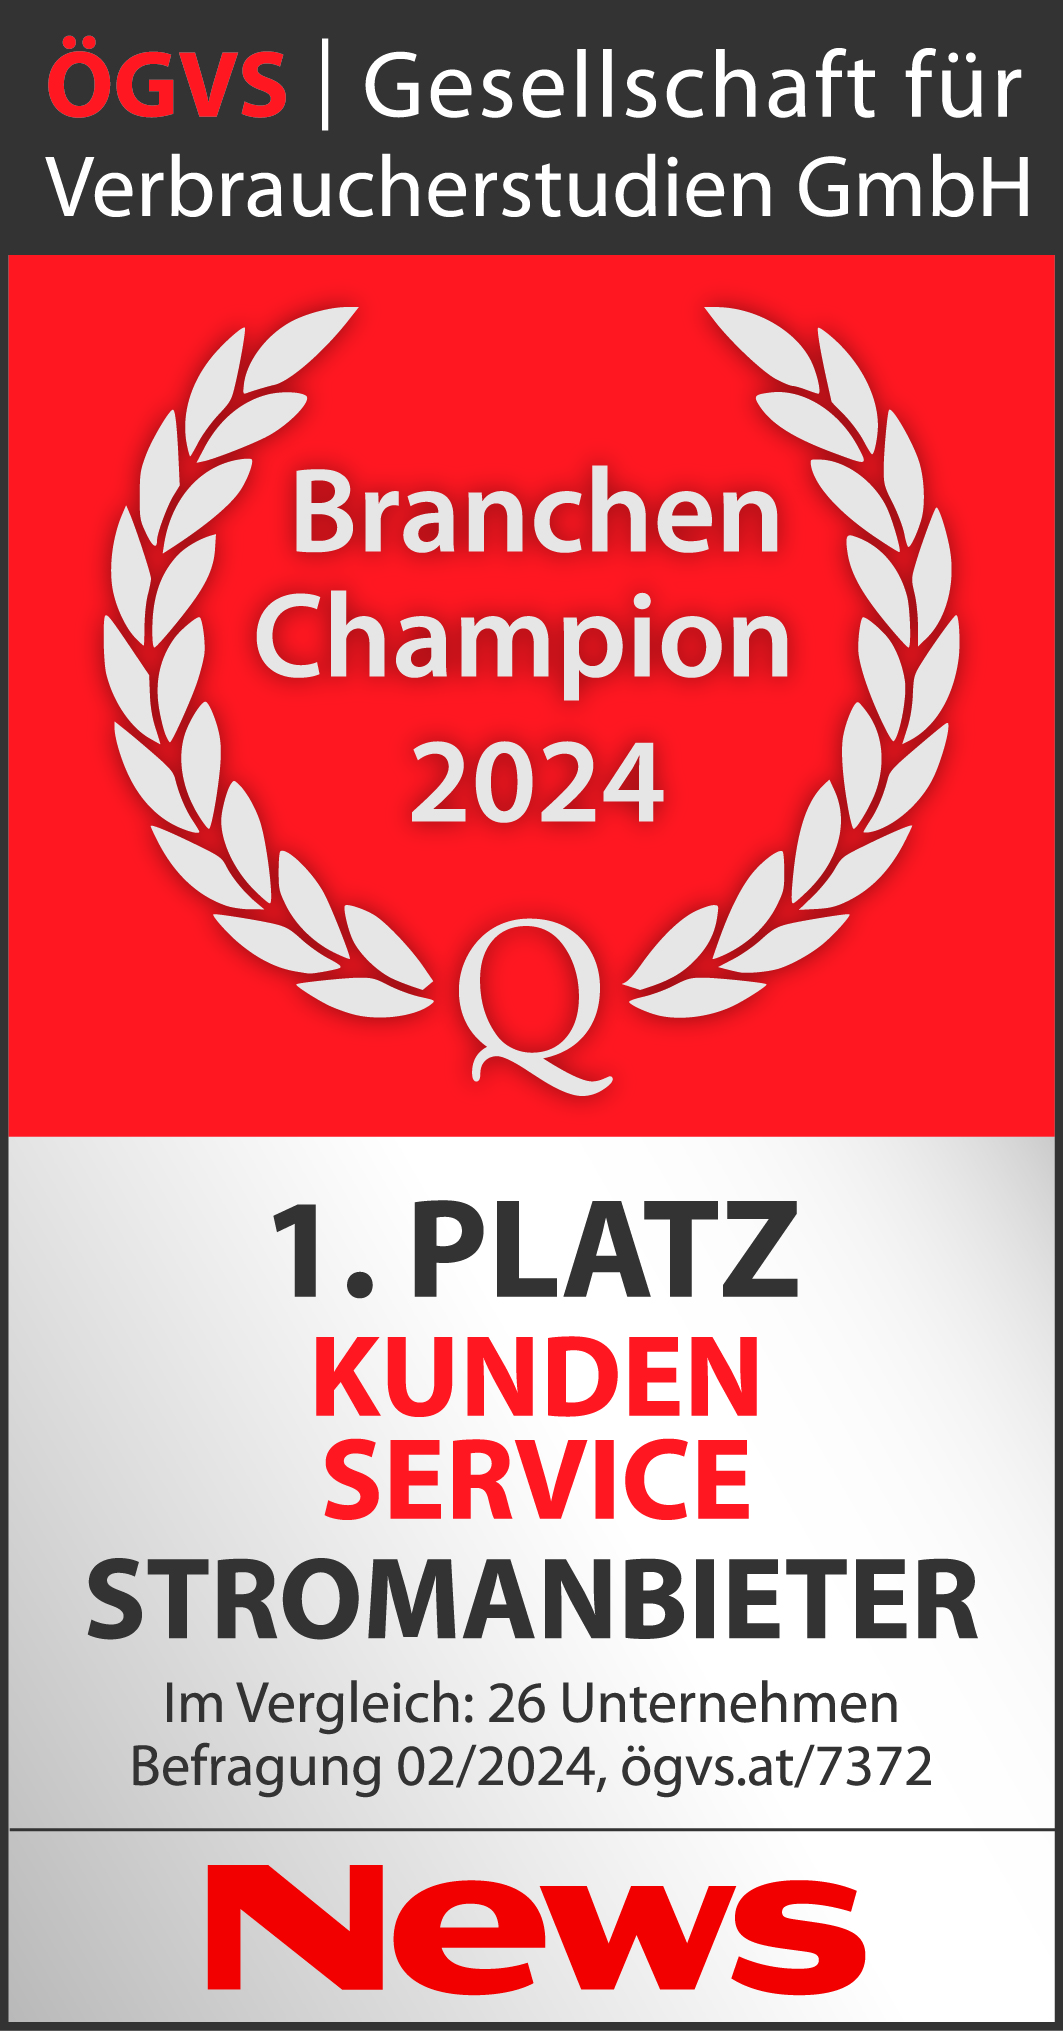 ÖGVS Branchen Champion Auszeichnung 2024: Platz 1 Kundenservice Stromanbieter. Im Verlgiech: 26 Unternehmen Befragung 02/2024 ögvs.at/7372